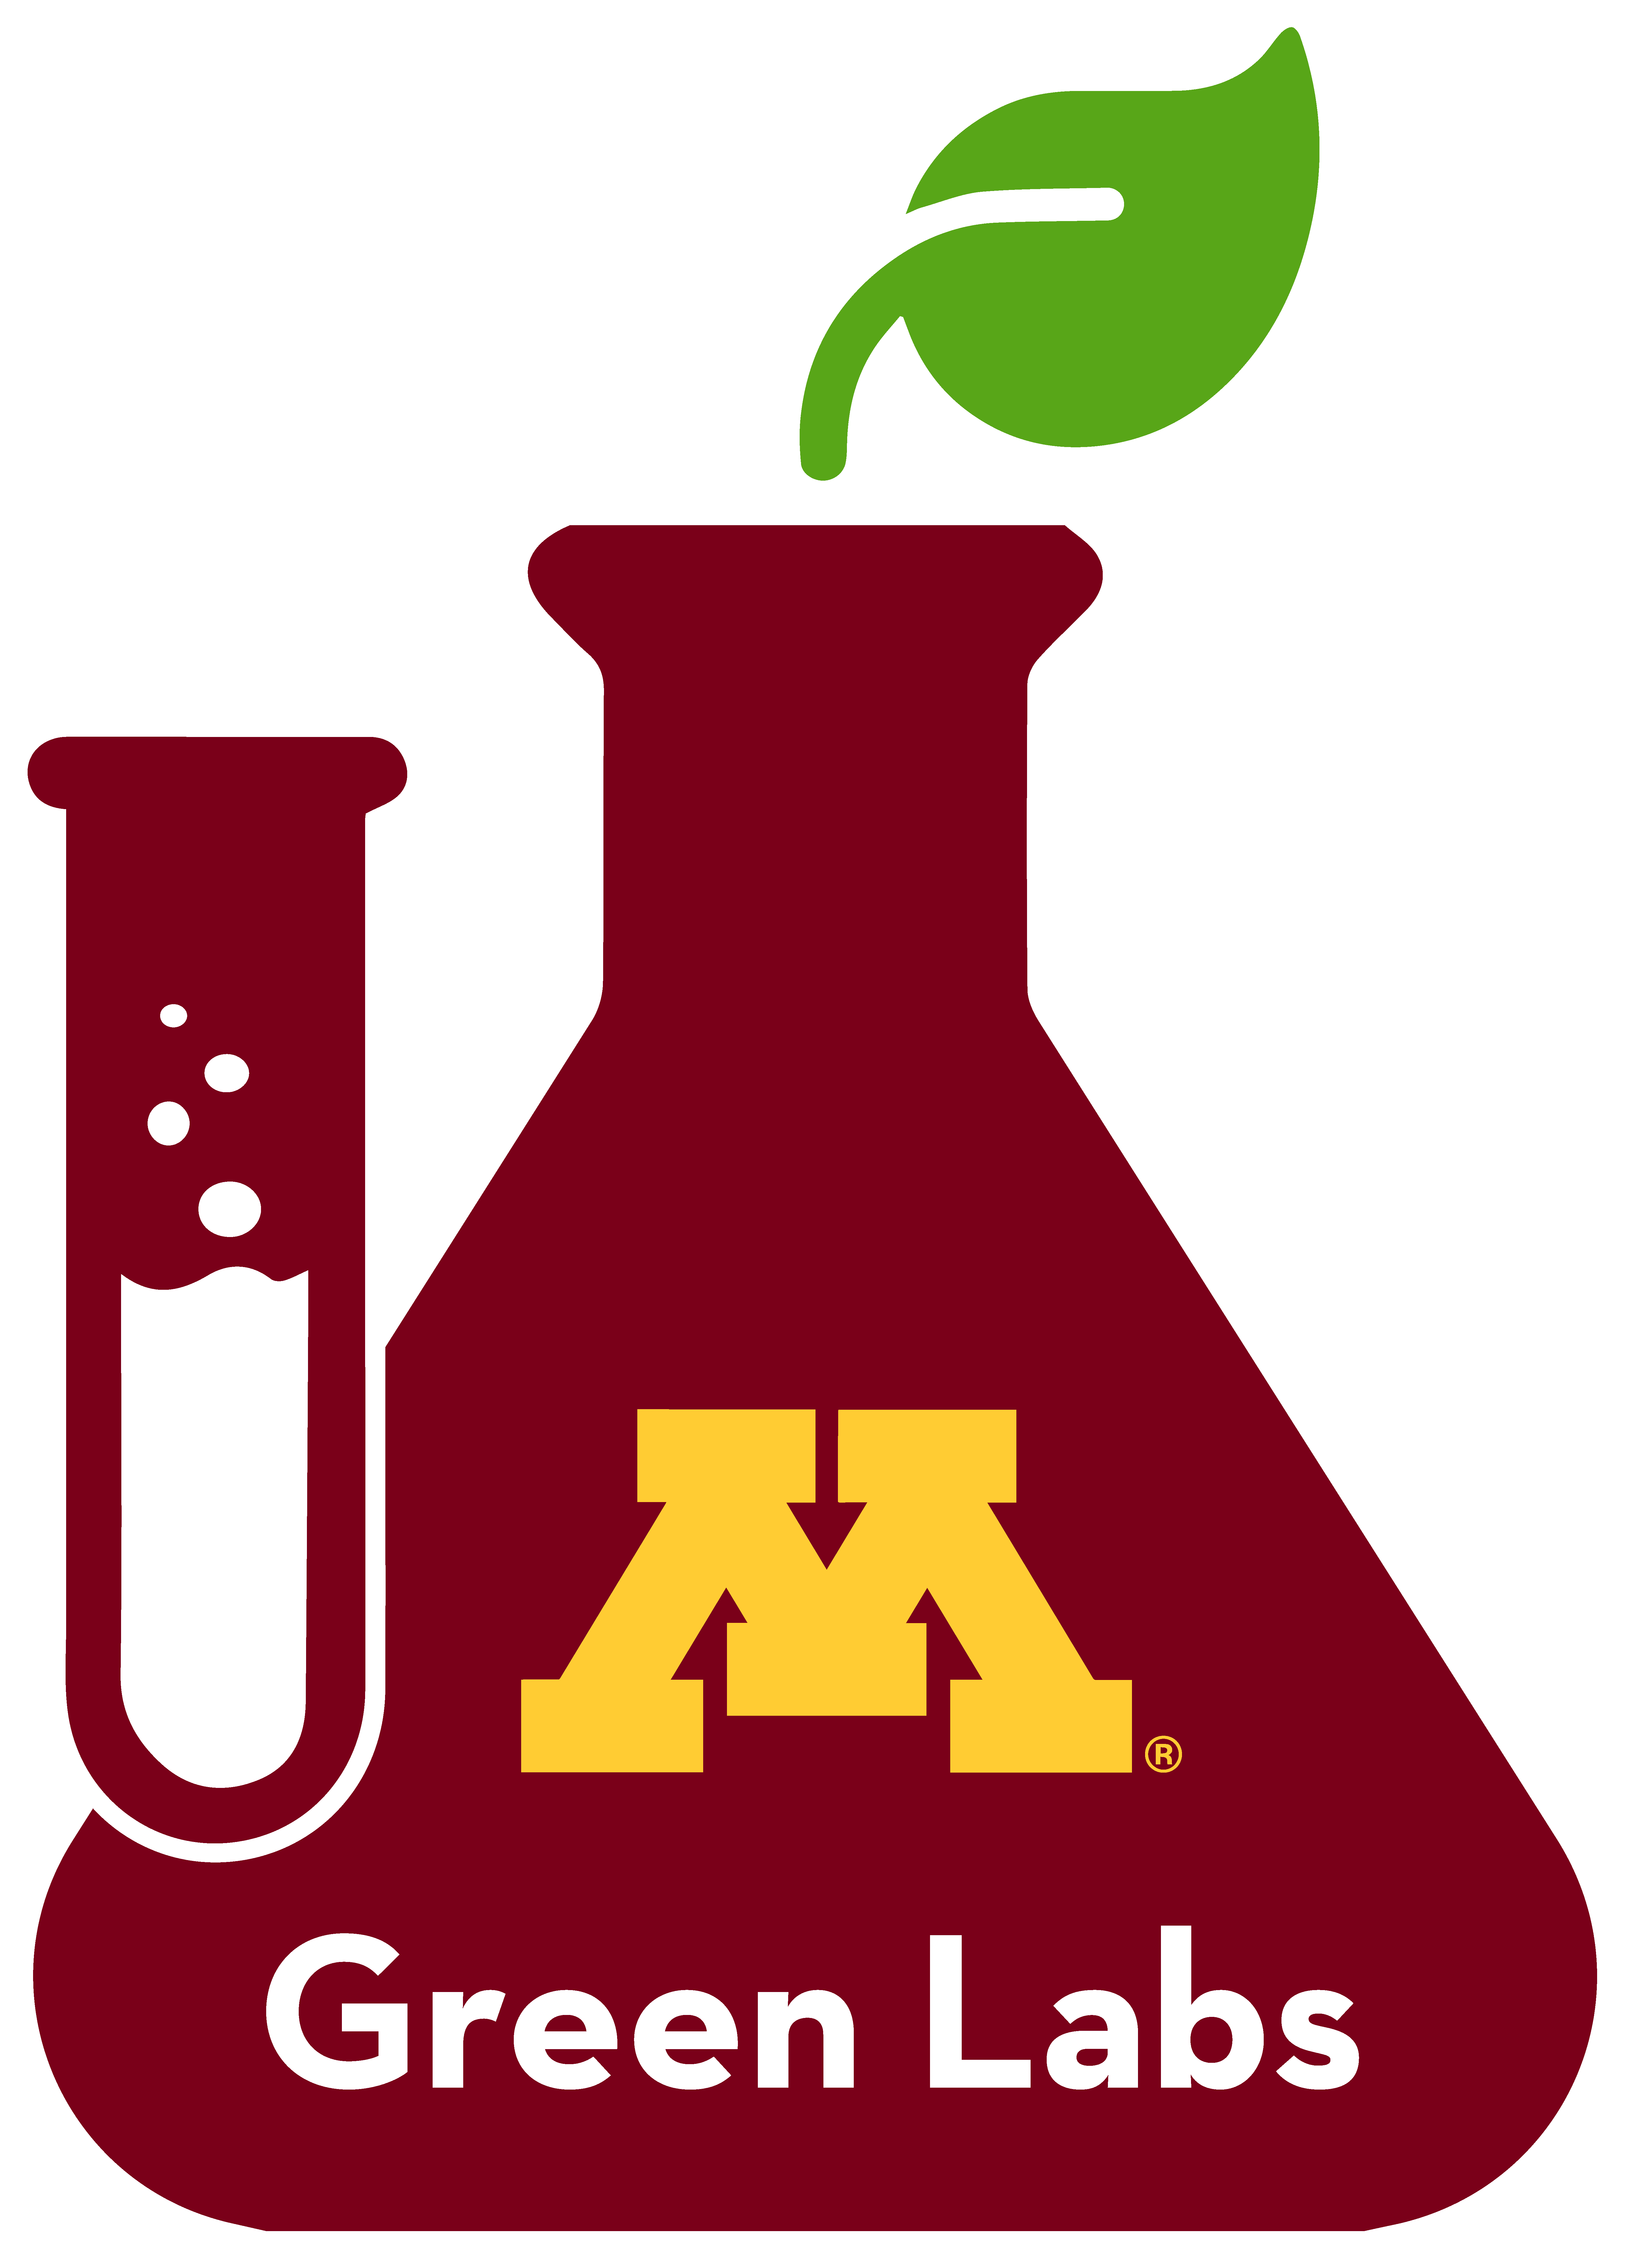 Green Labs logo again